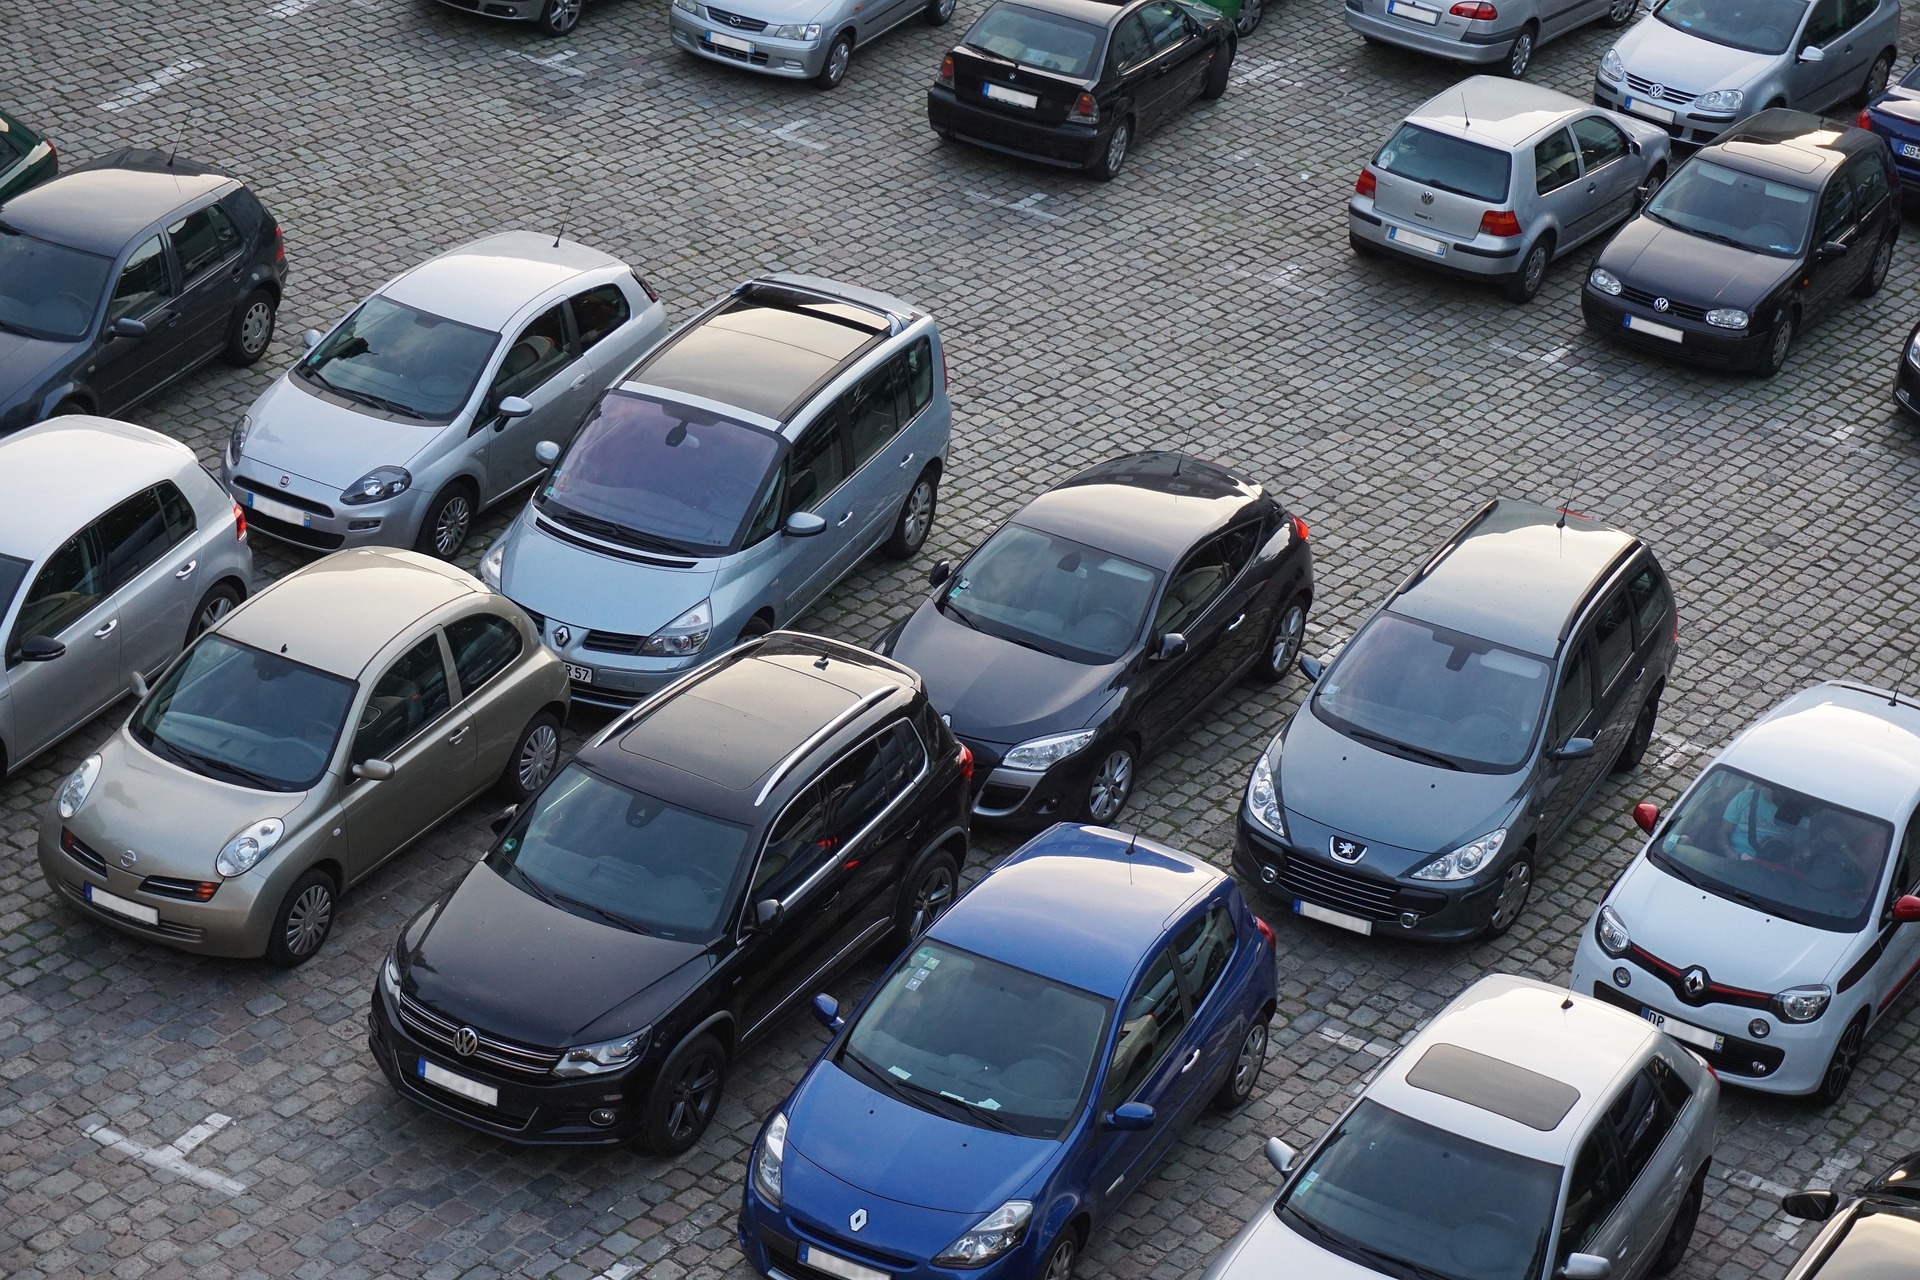 Bild zeigt parkende Autos